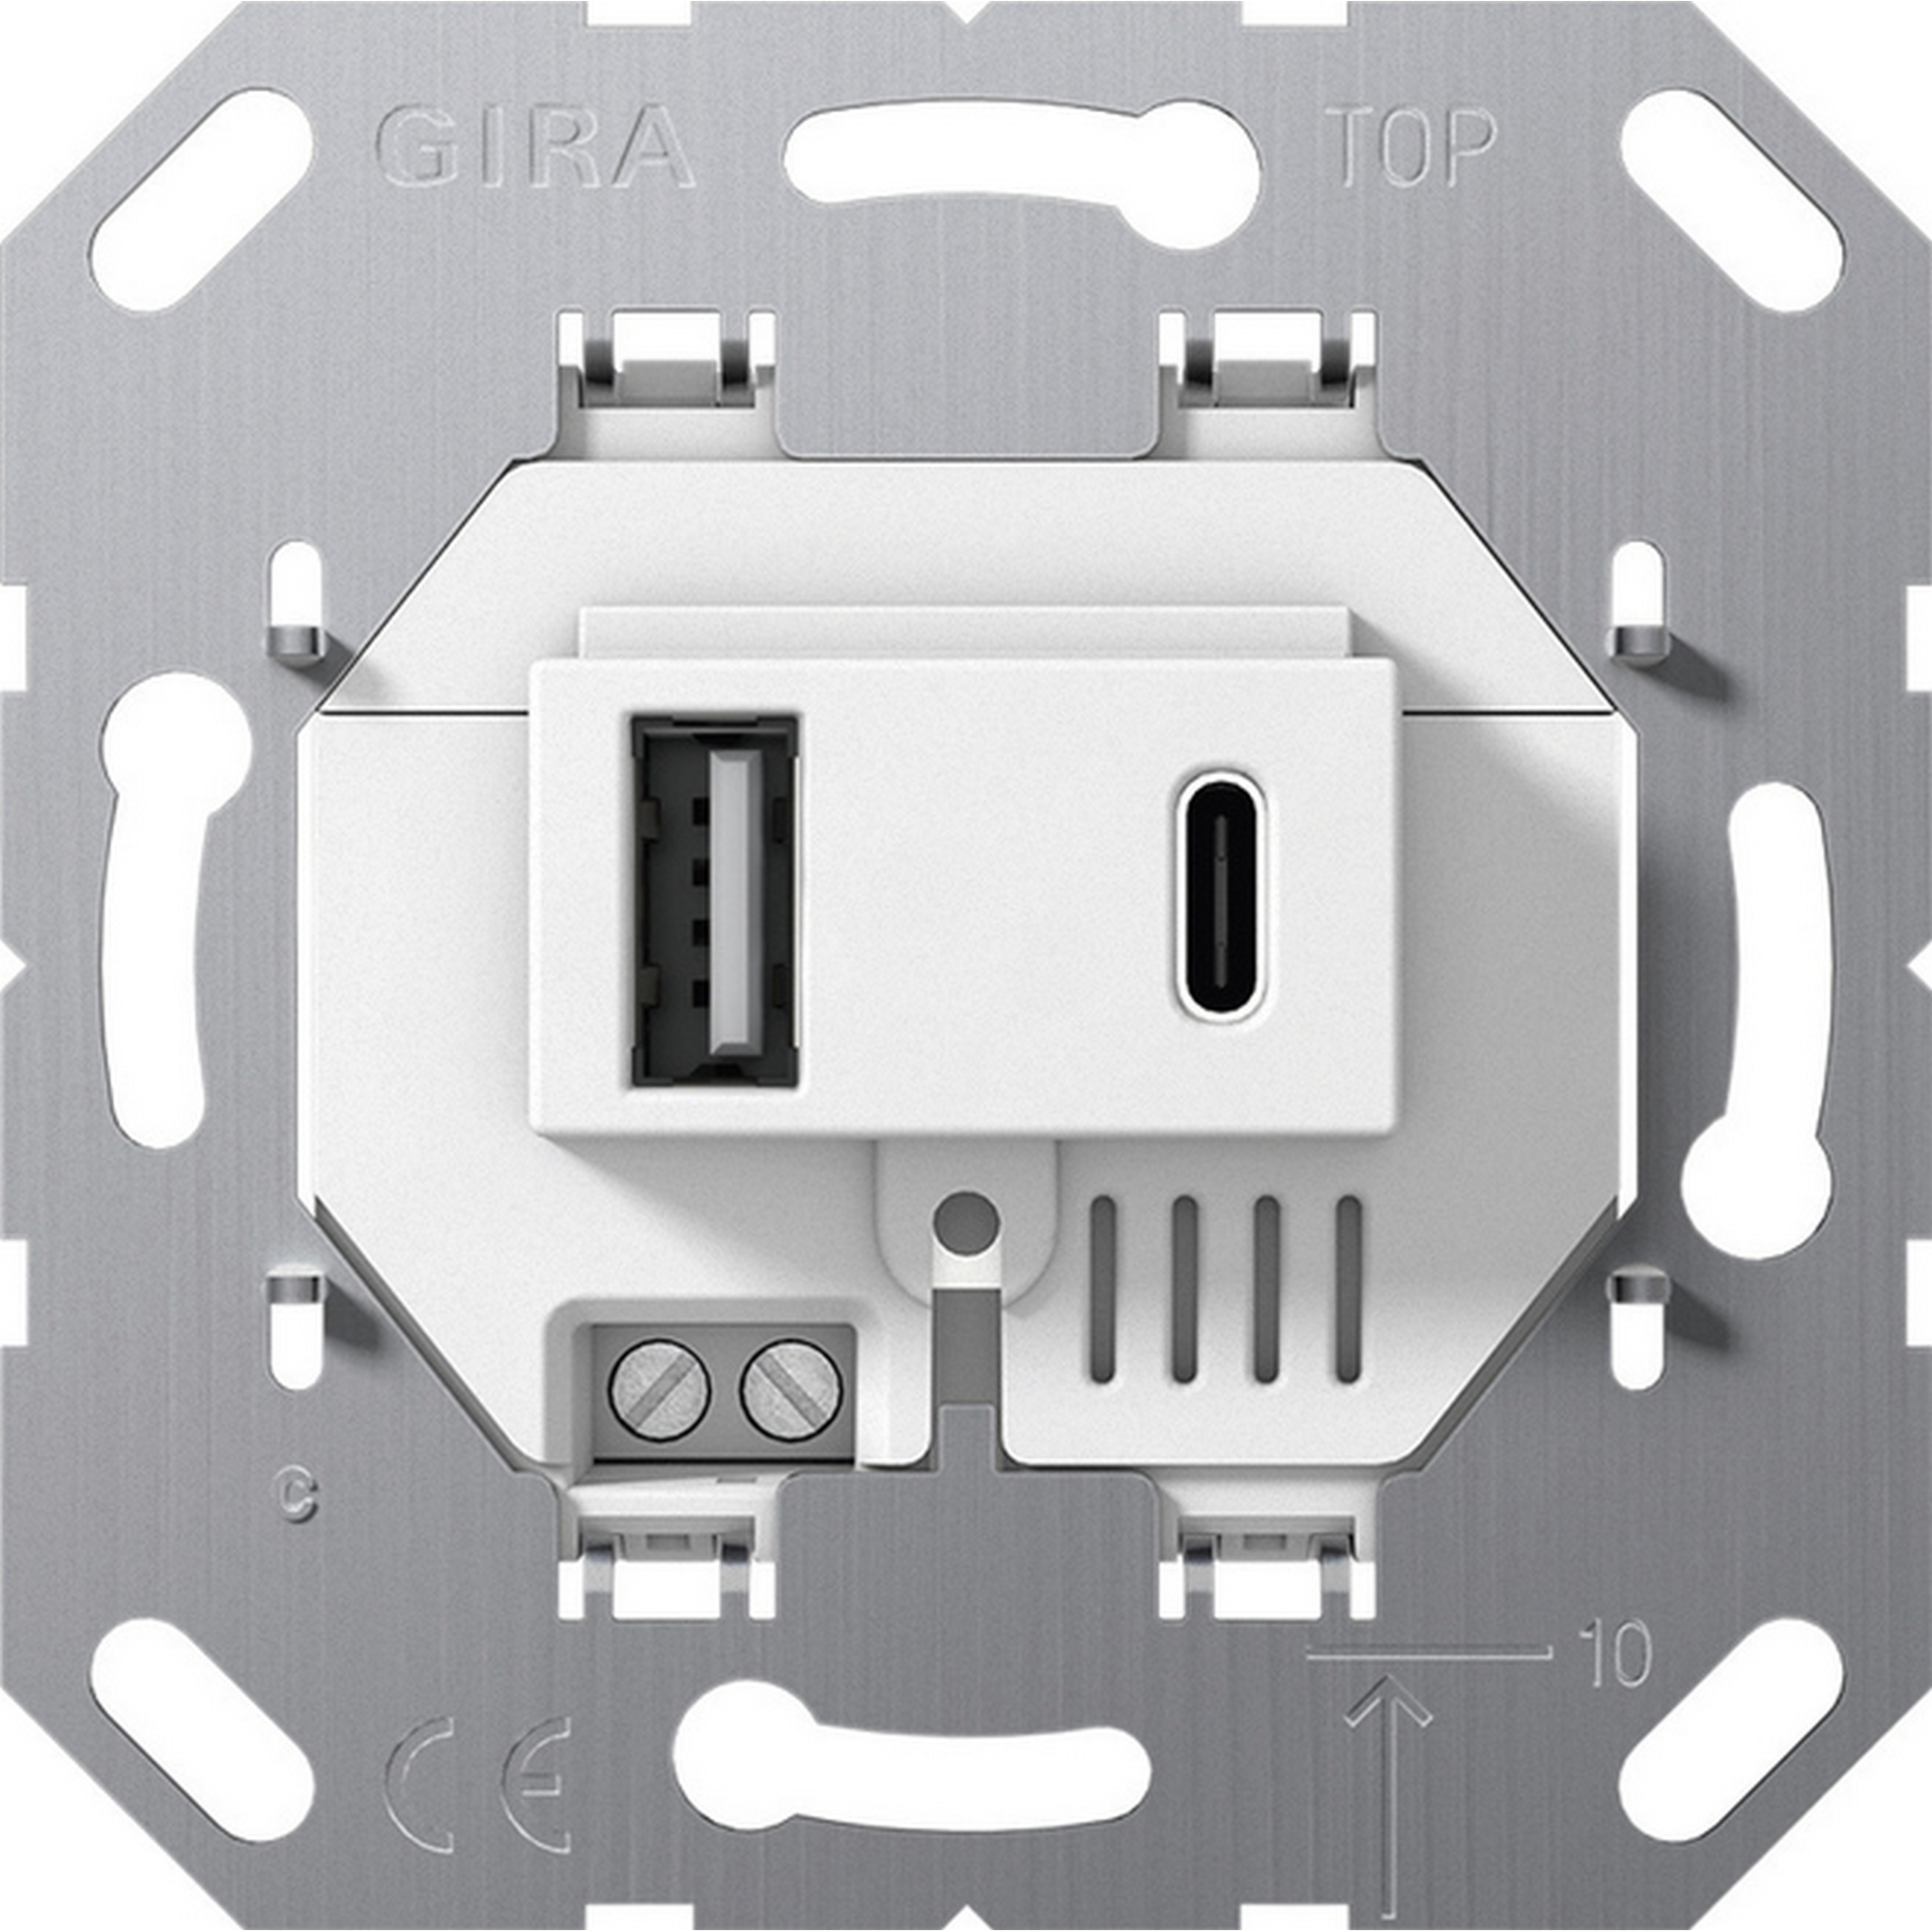 Einsatz USB Spannungsversorgung 2-fach Typ A/C 7,1 x 7,1 cm + product picture